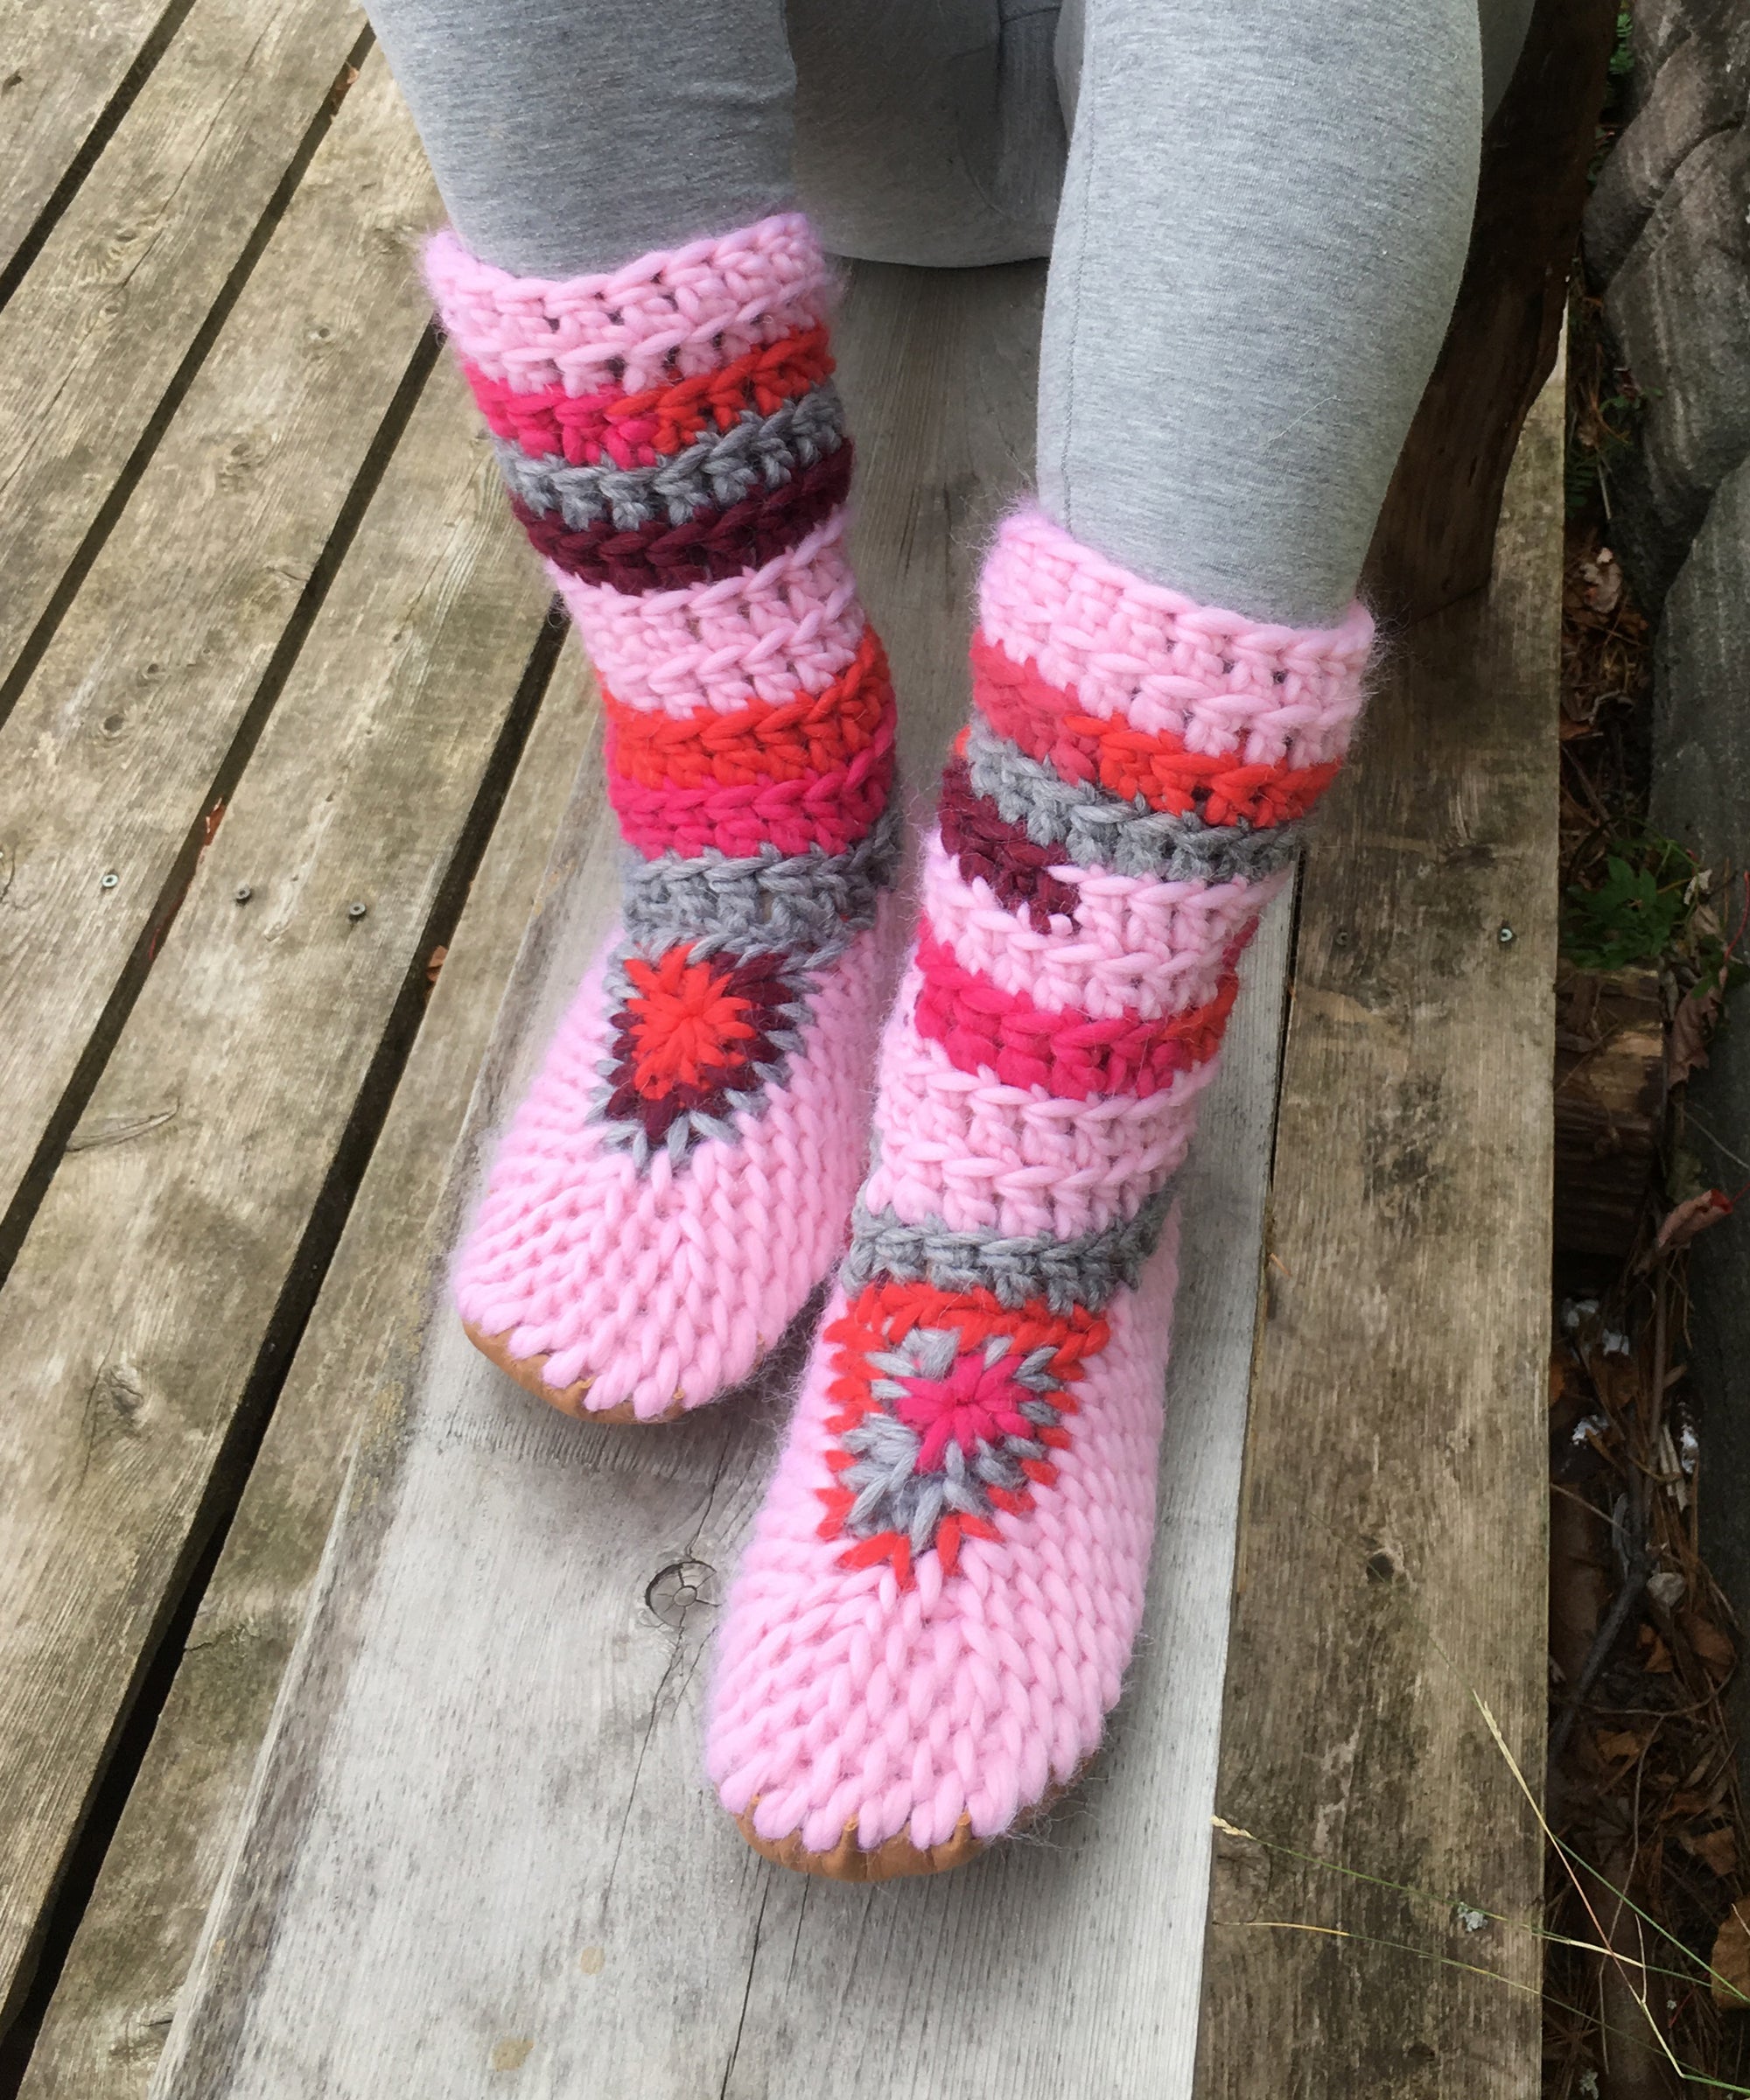 SALE! Women's 5-5.5 Muffle-Boot: Pink Merino Wool Slipper Boots